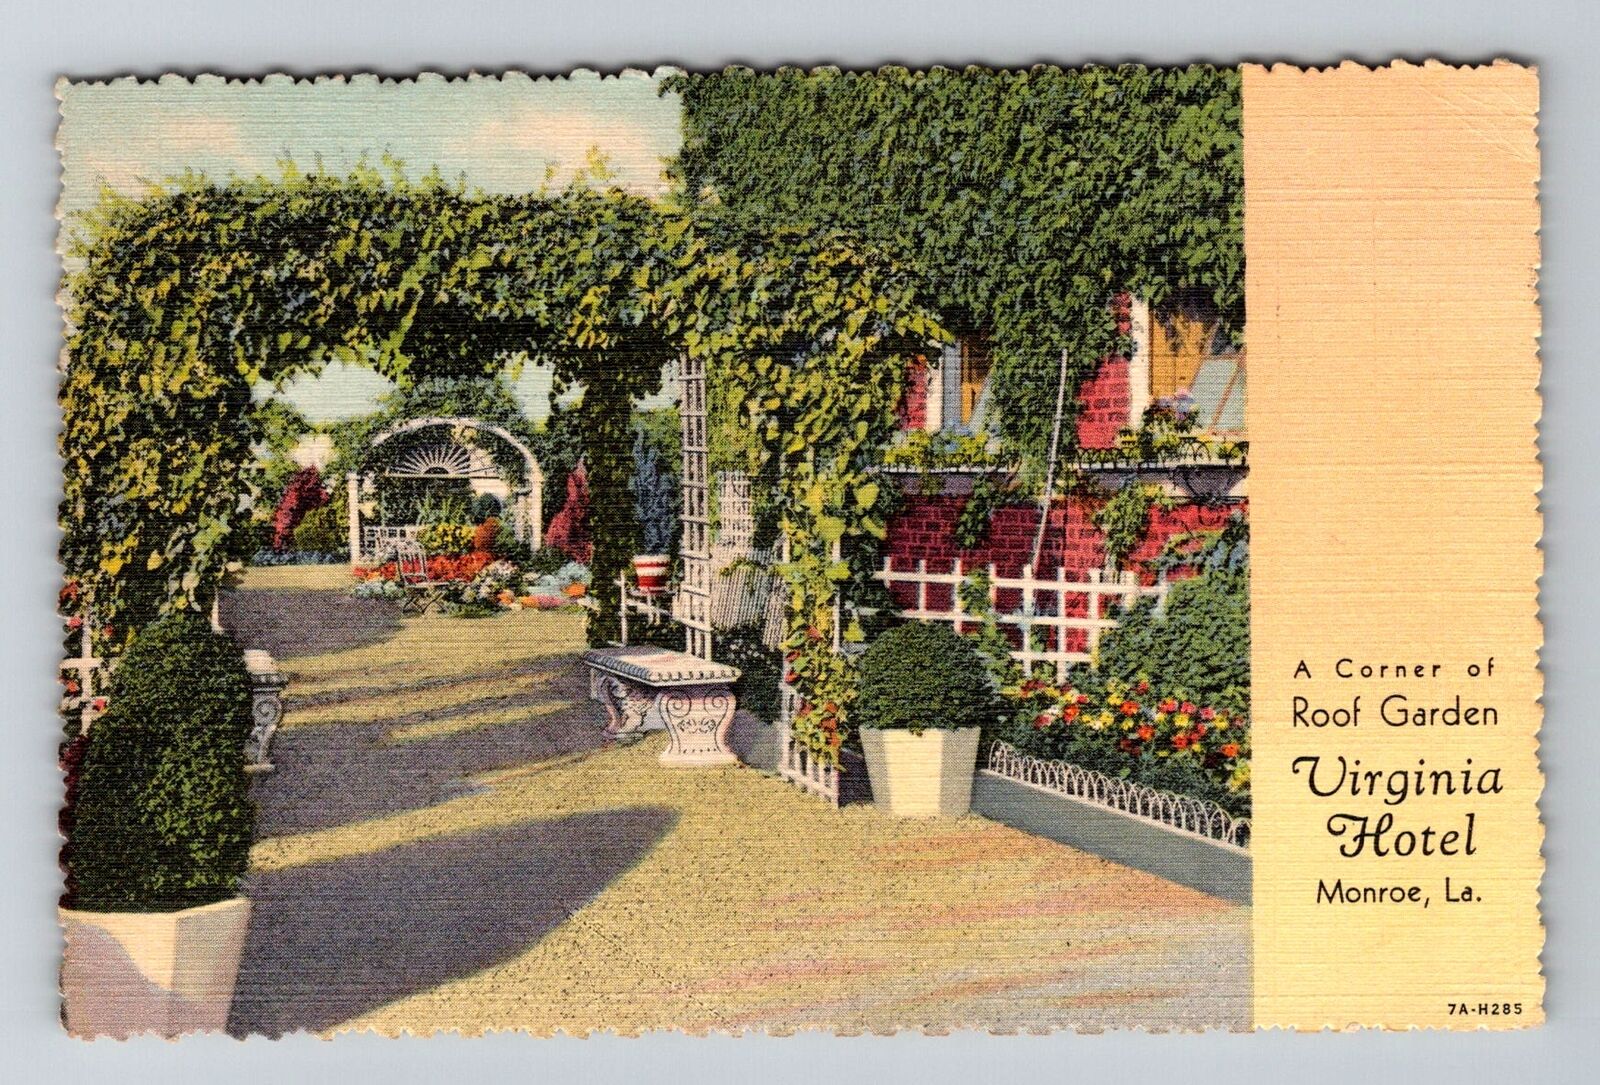 Monroe LA-Louisiana, Roof Garden, Virginia Hotel Vintage c1941 Souvenir Postcard